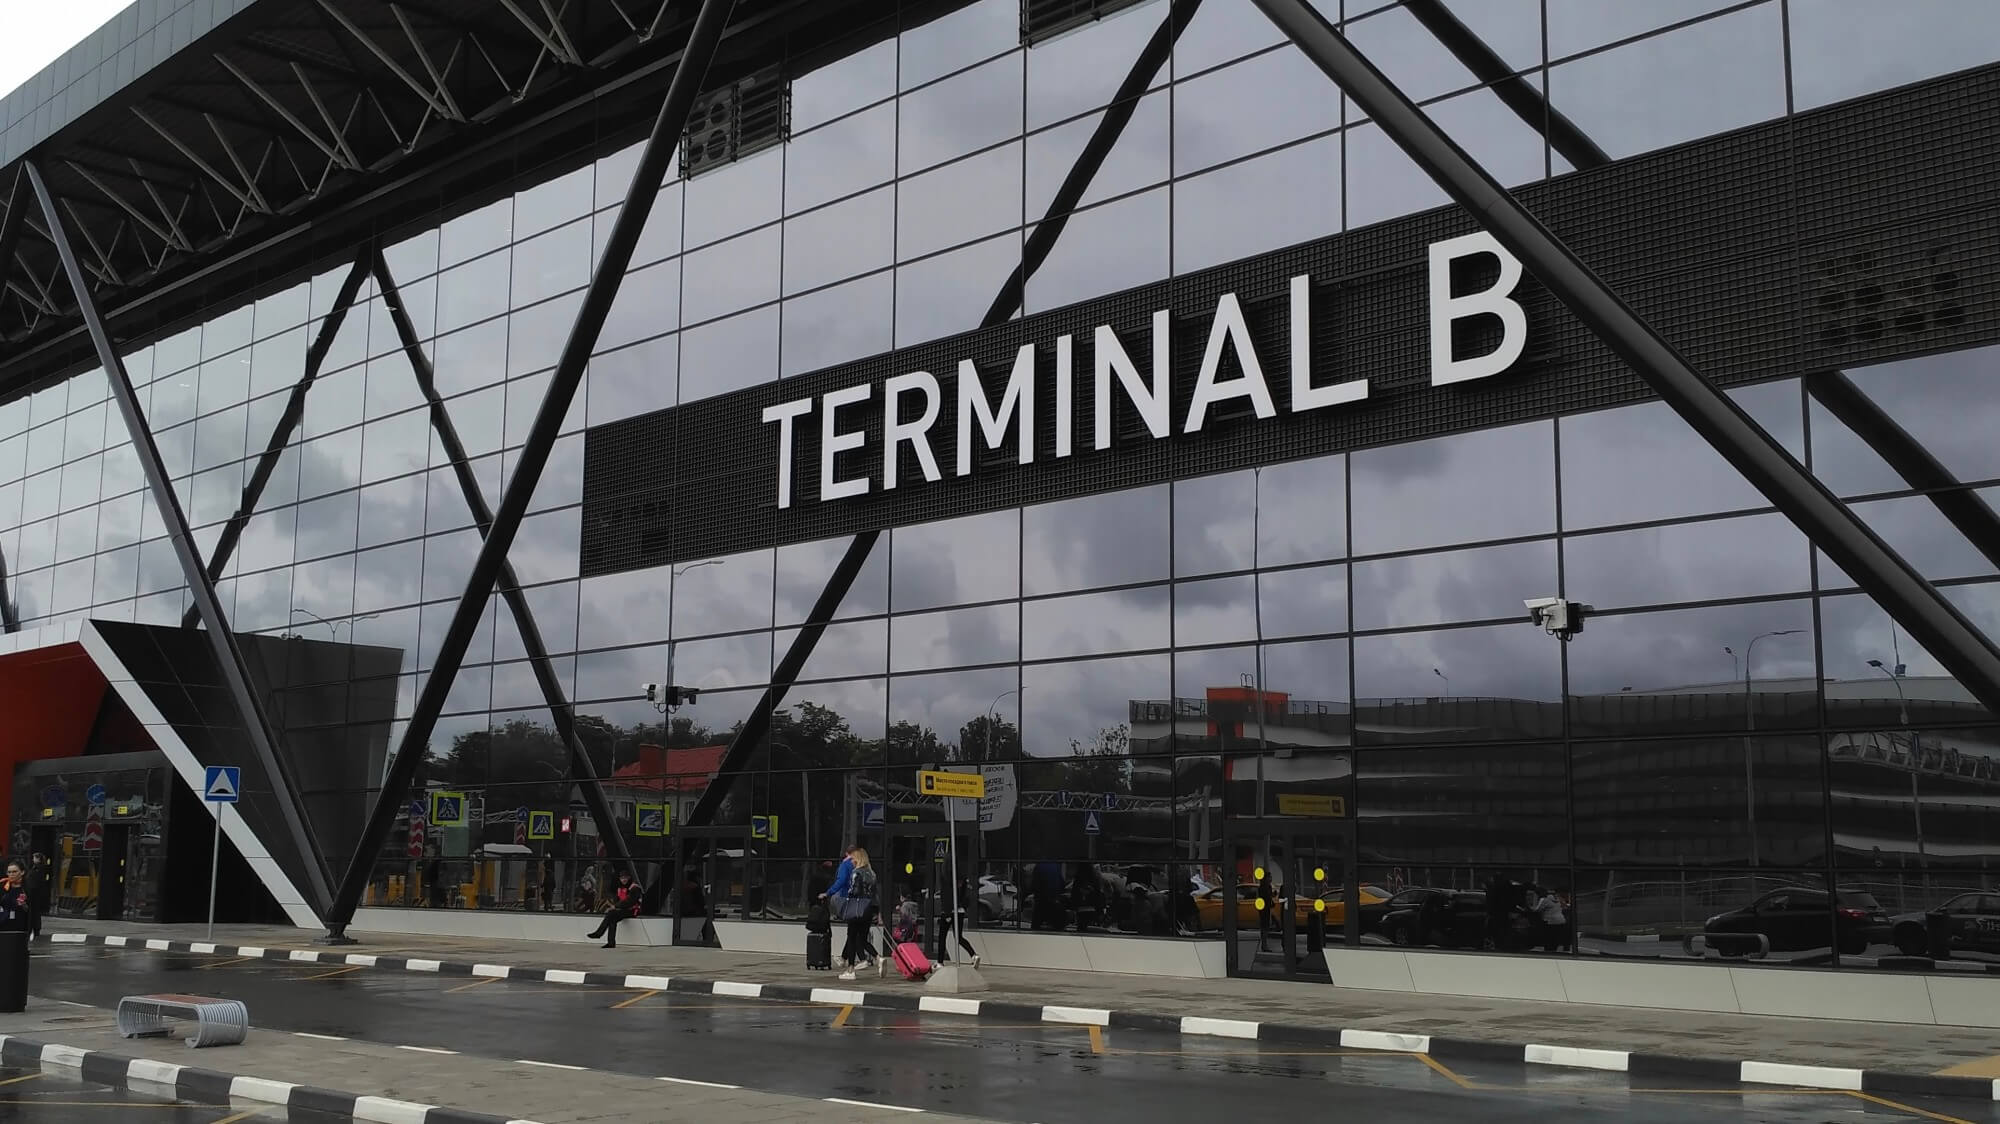 Аэропорт шереметьево терминал c